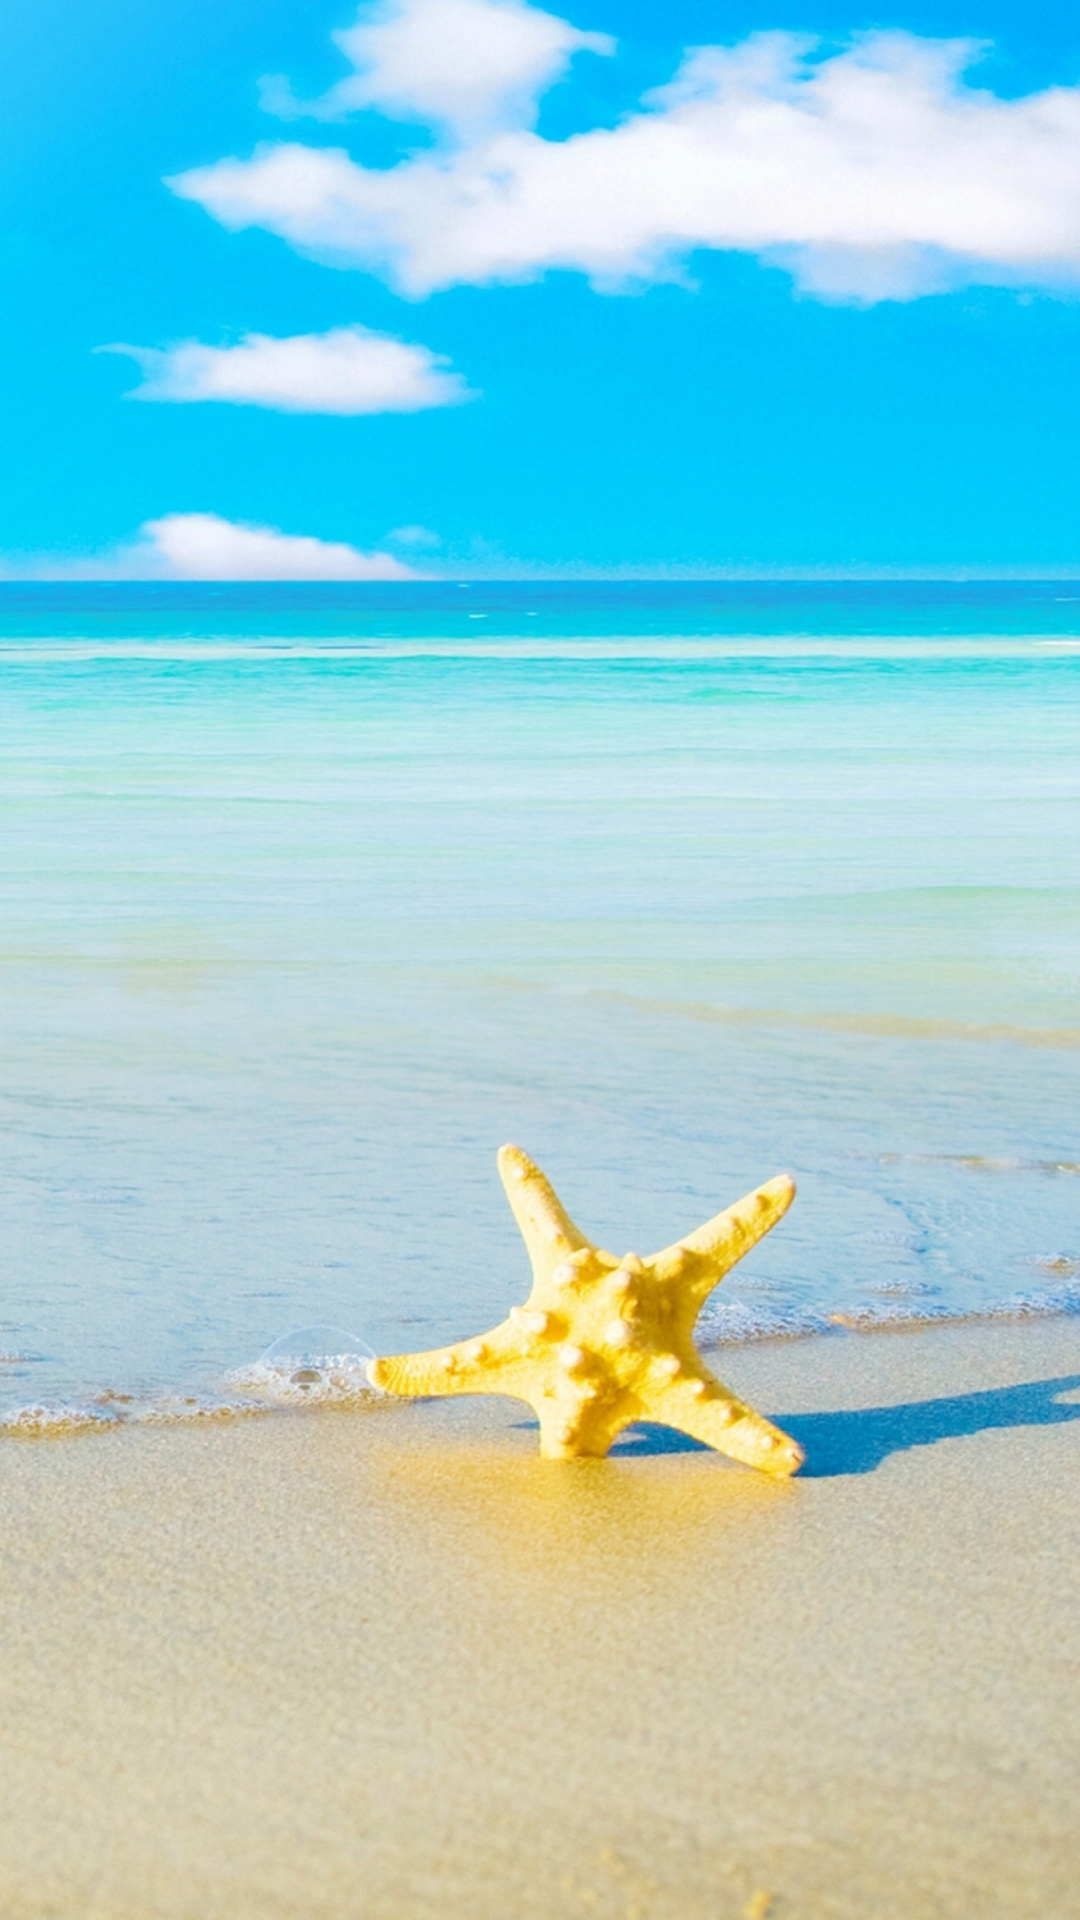 Starfish at summer beach screenshot #1 1080x1920